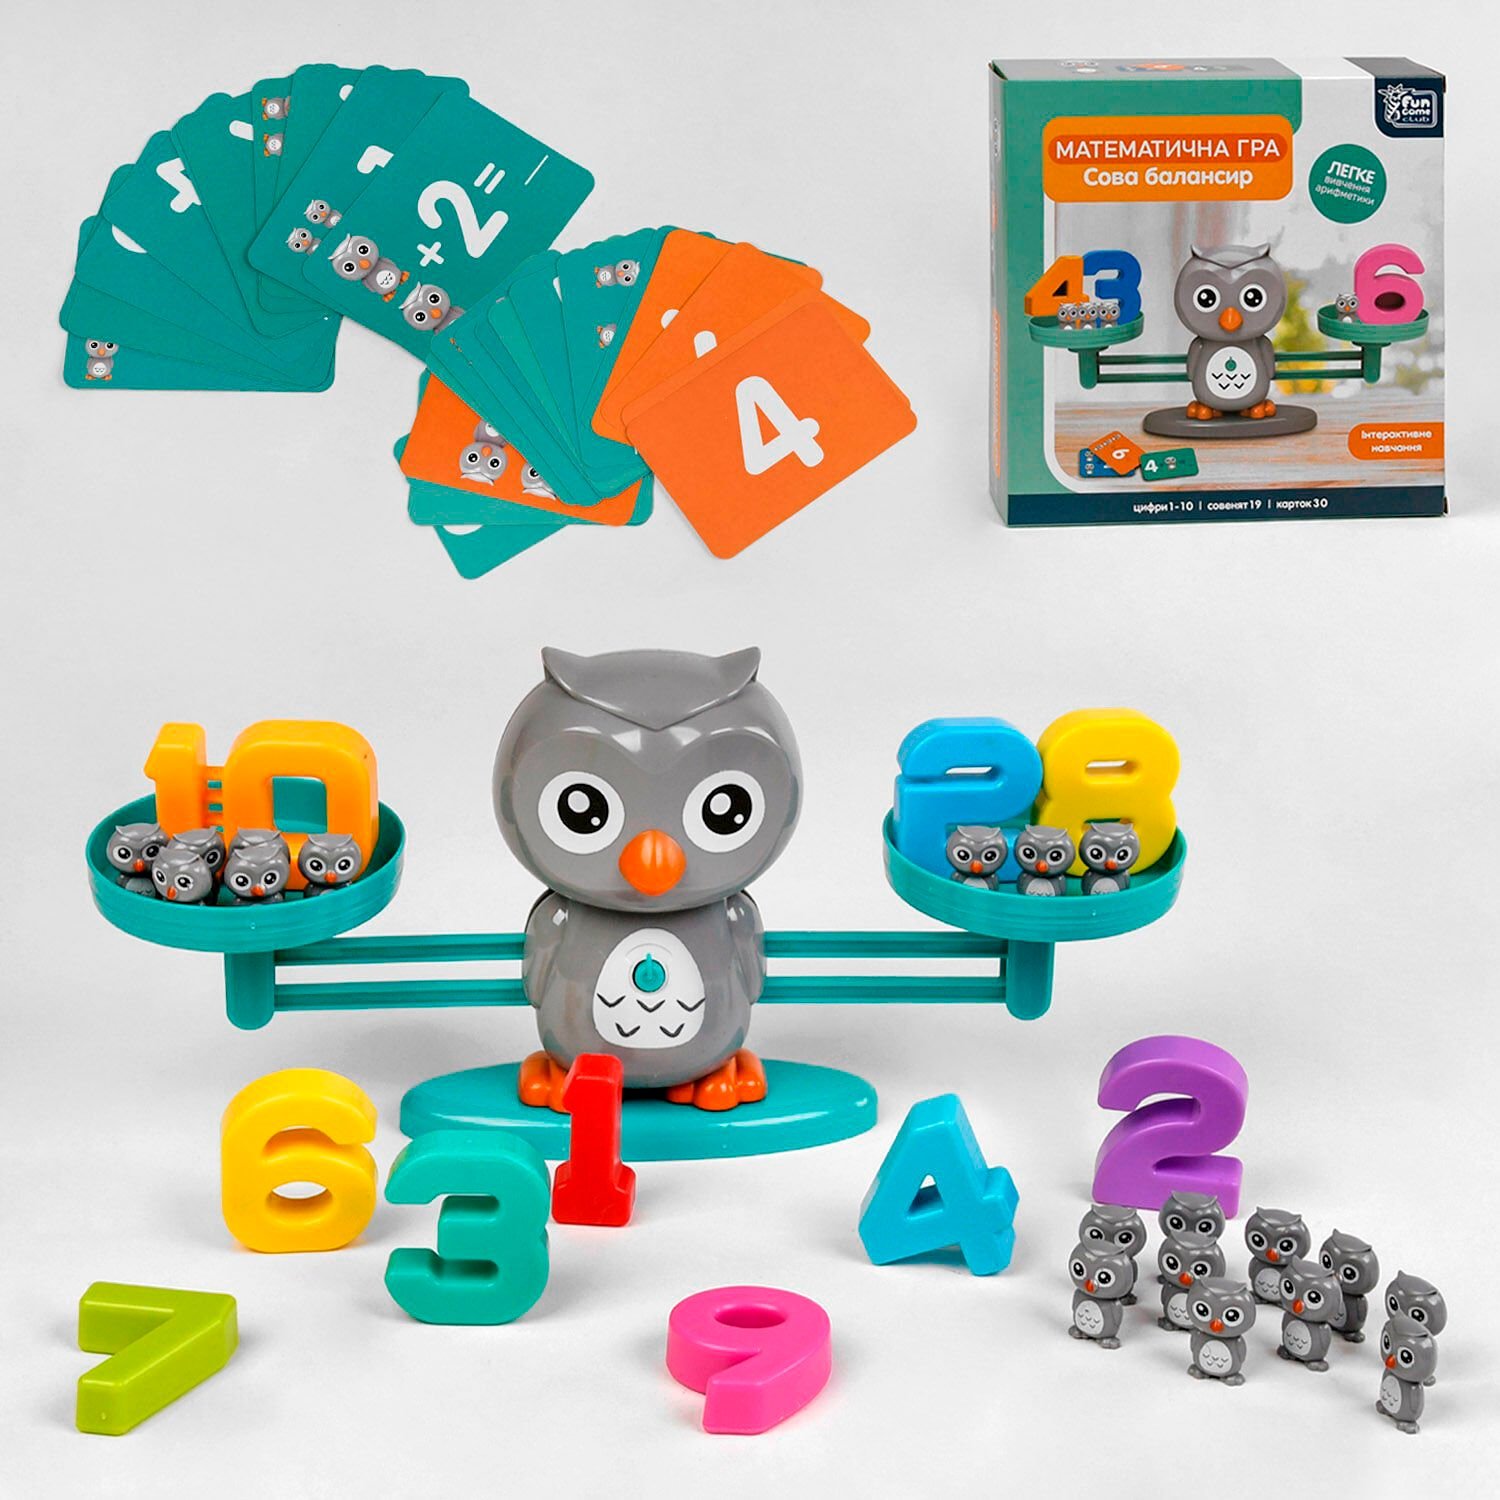 Розвиваюча дитяча Гра-балансир Сова (30299) “4FUN Game Club” 53 елементи, 3 рівні гри, 30 карток, цифри від 1 до 10